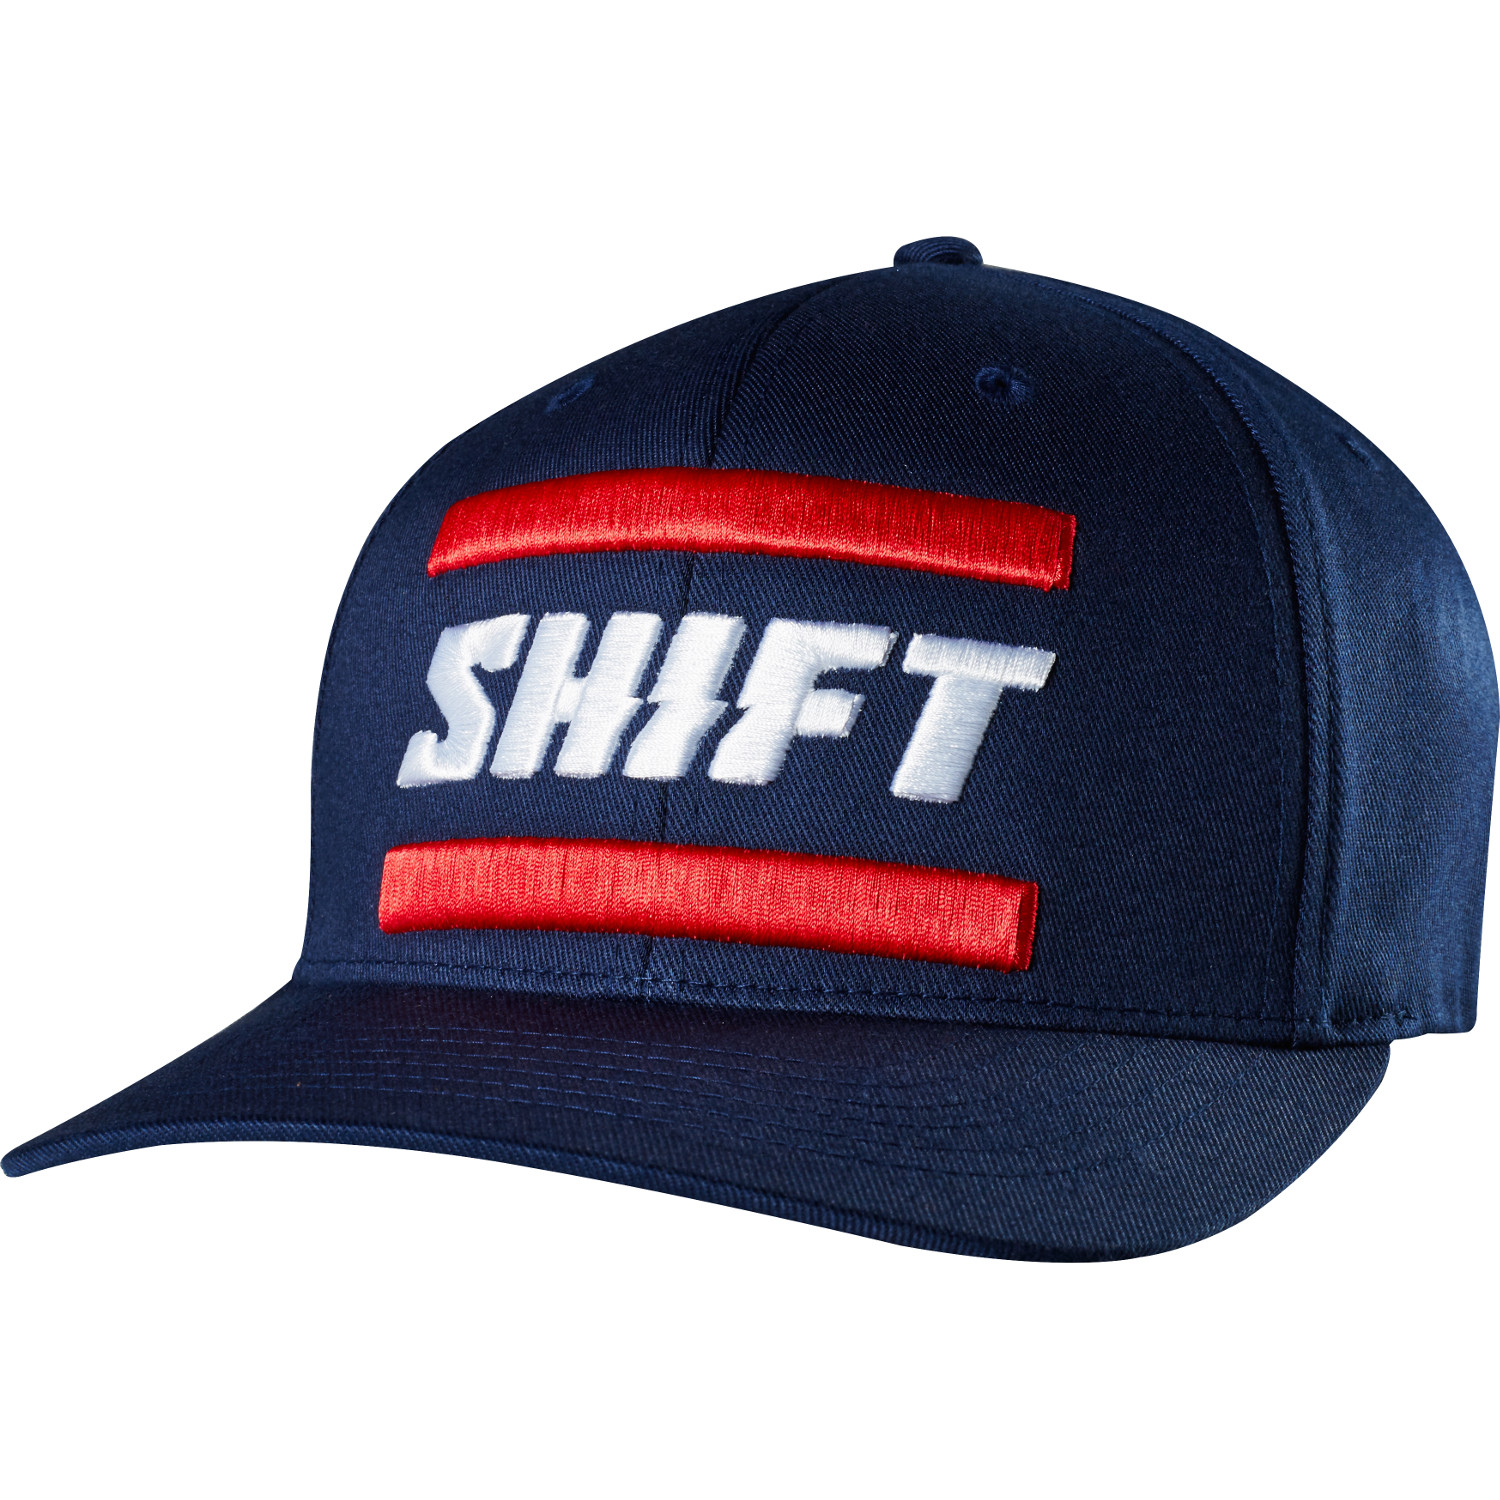 Shift Casquette Flexfit 3lack Label Navy